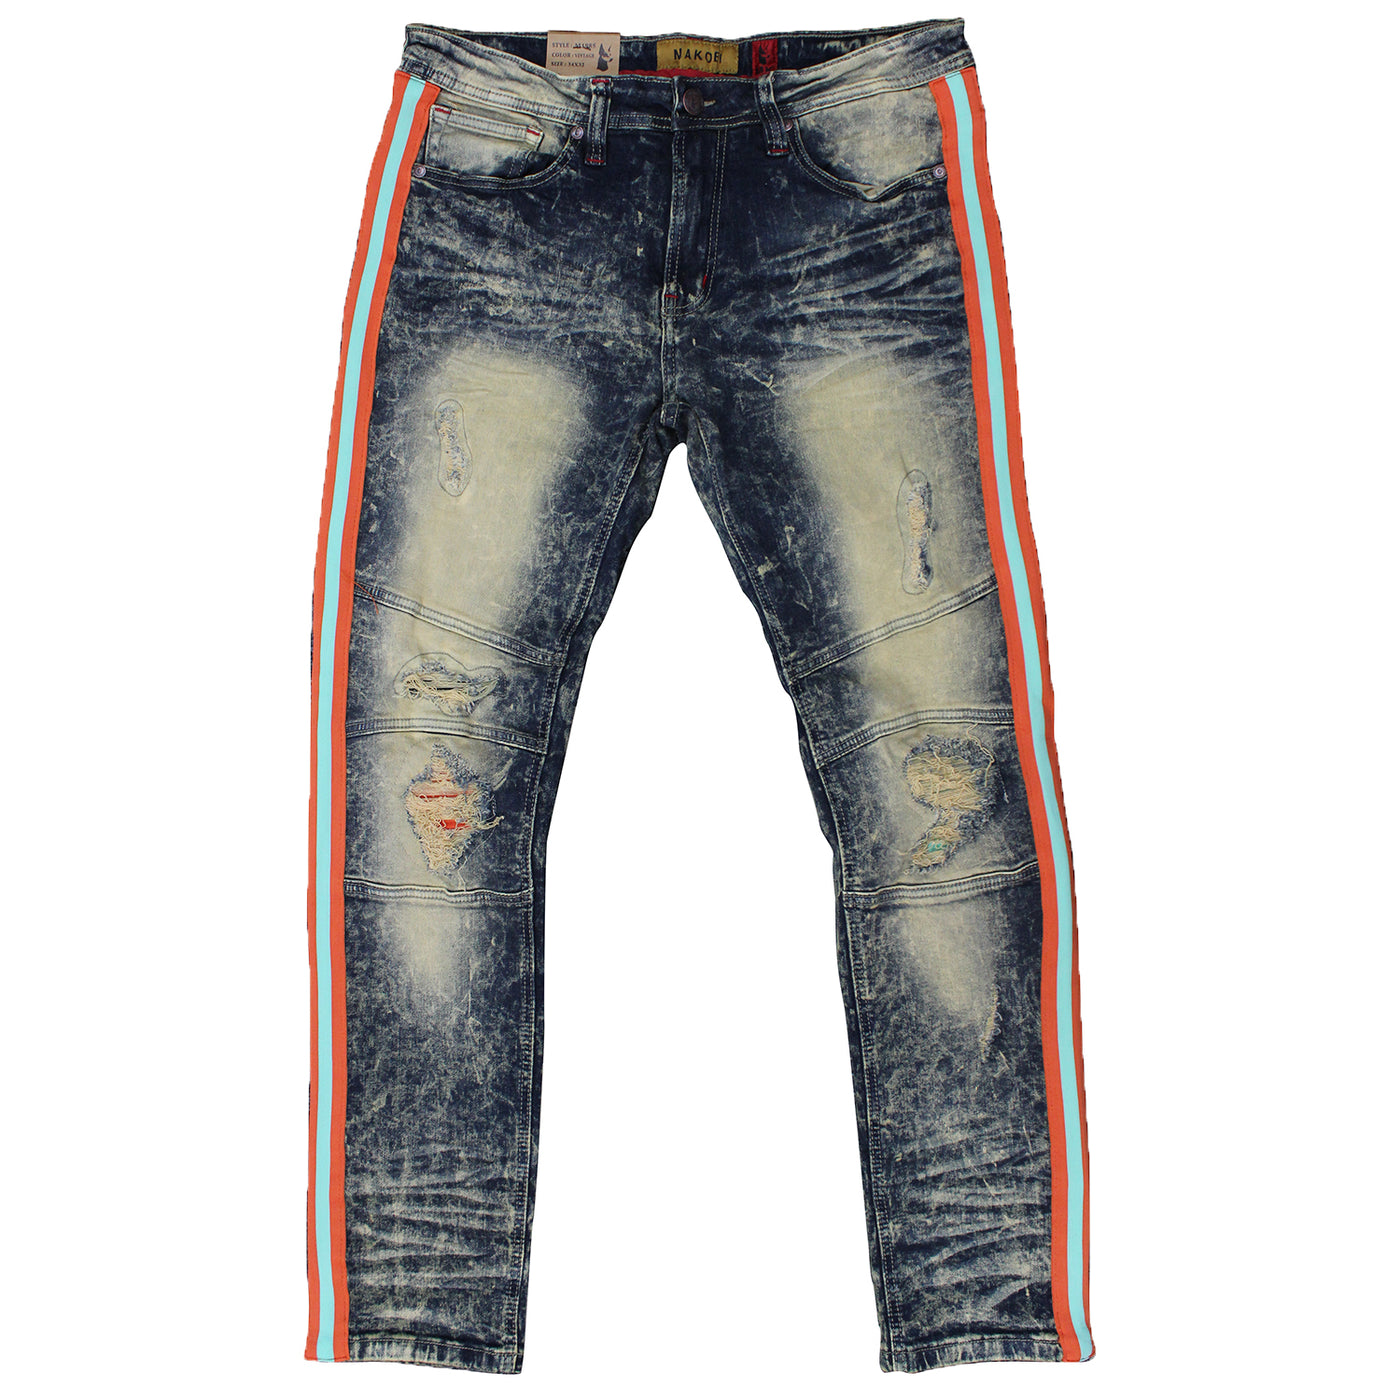 M1985 Makobi Zakynthos Denim Jeans - Vintage Wash